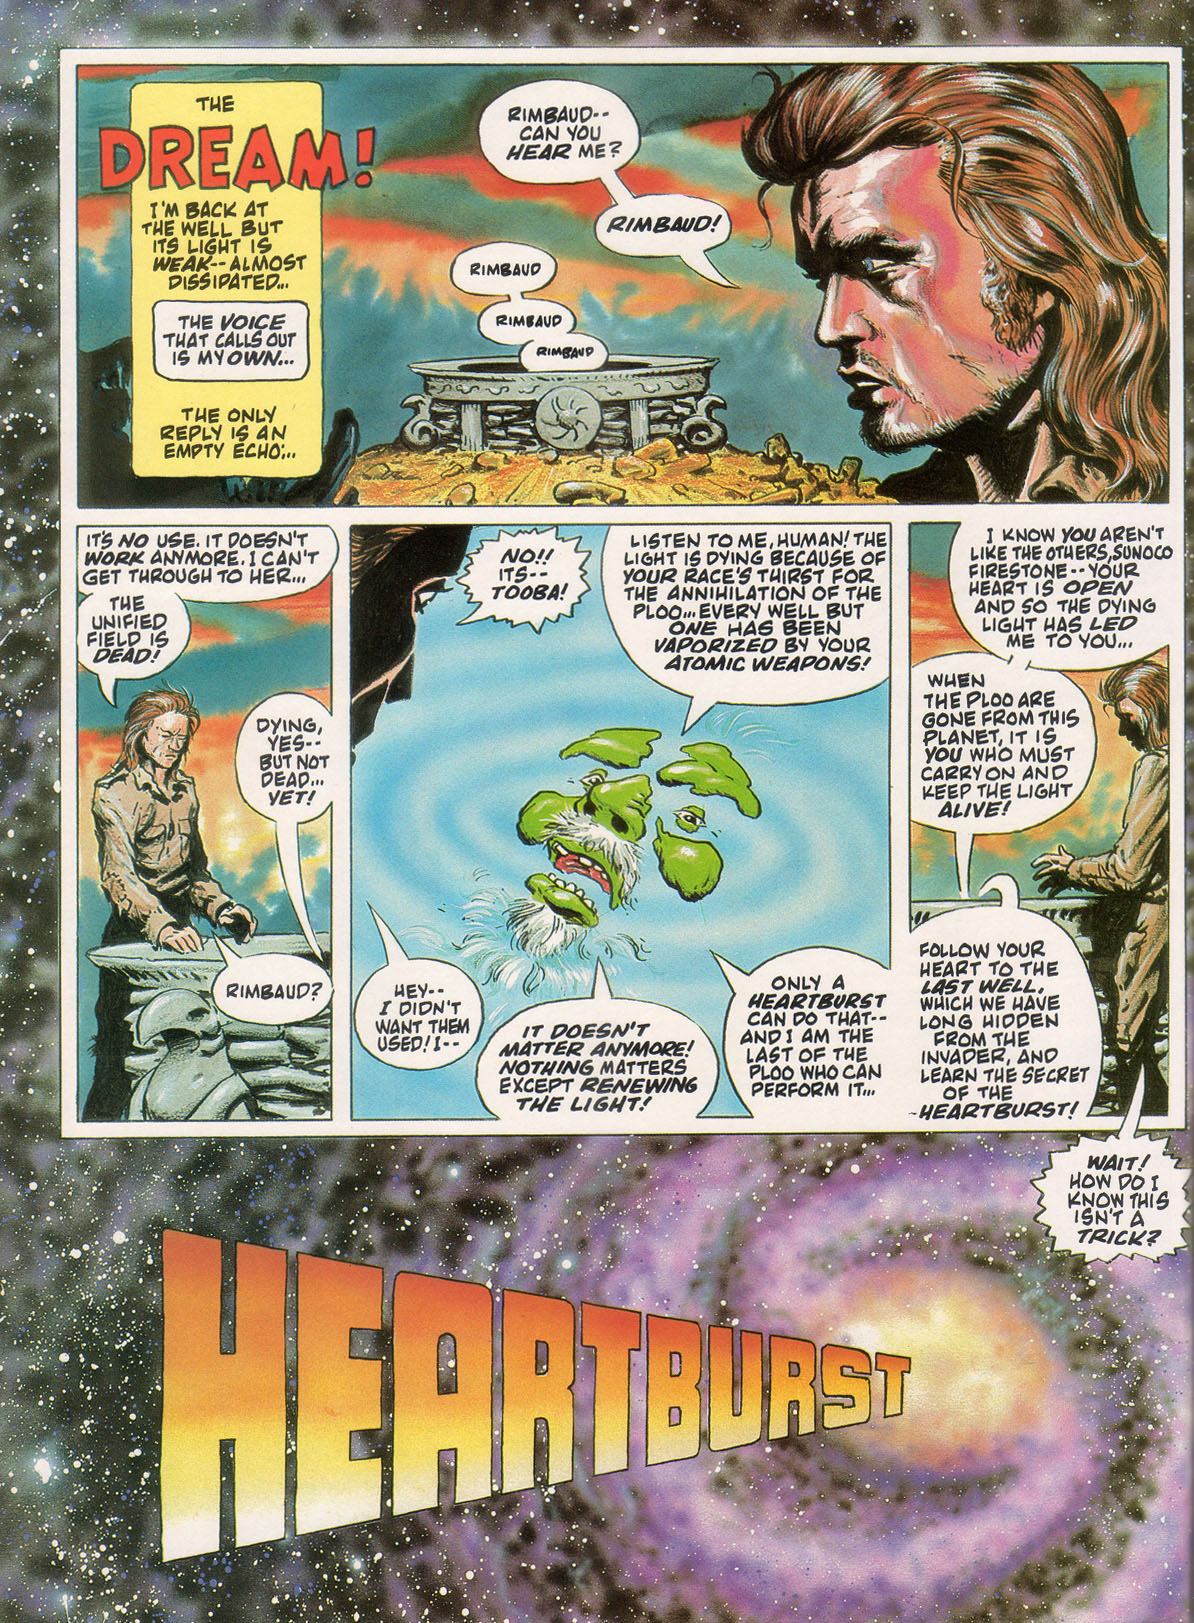 Read online Marvel Graphic Novel comic -  Issue #10 - Heartburst - 36